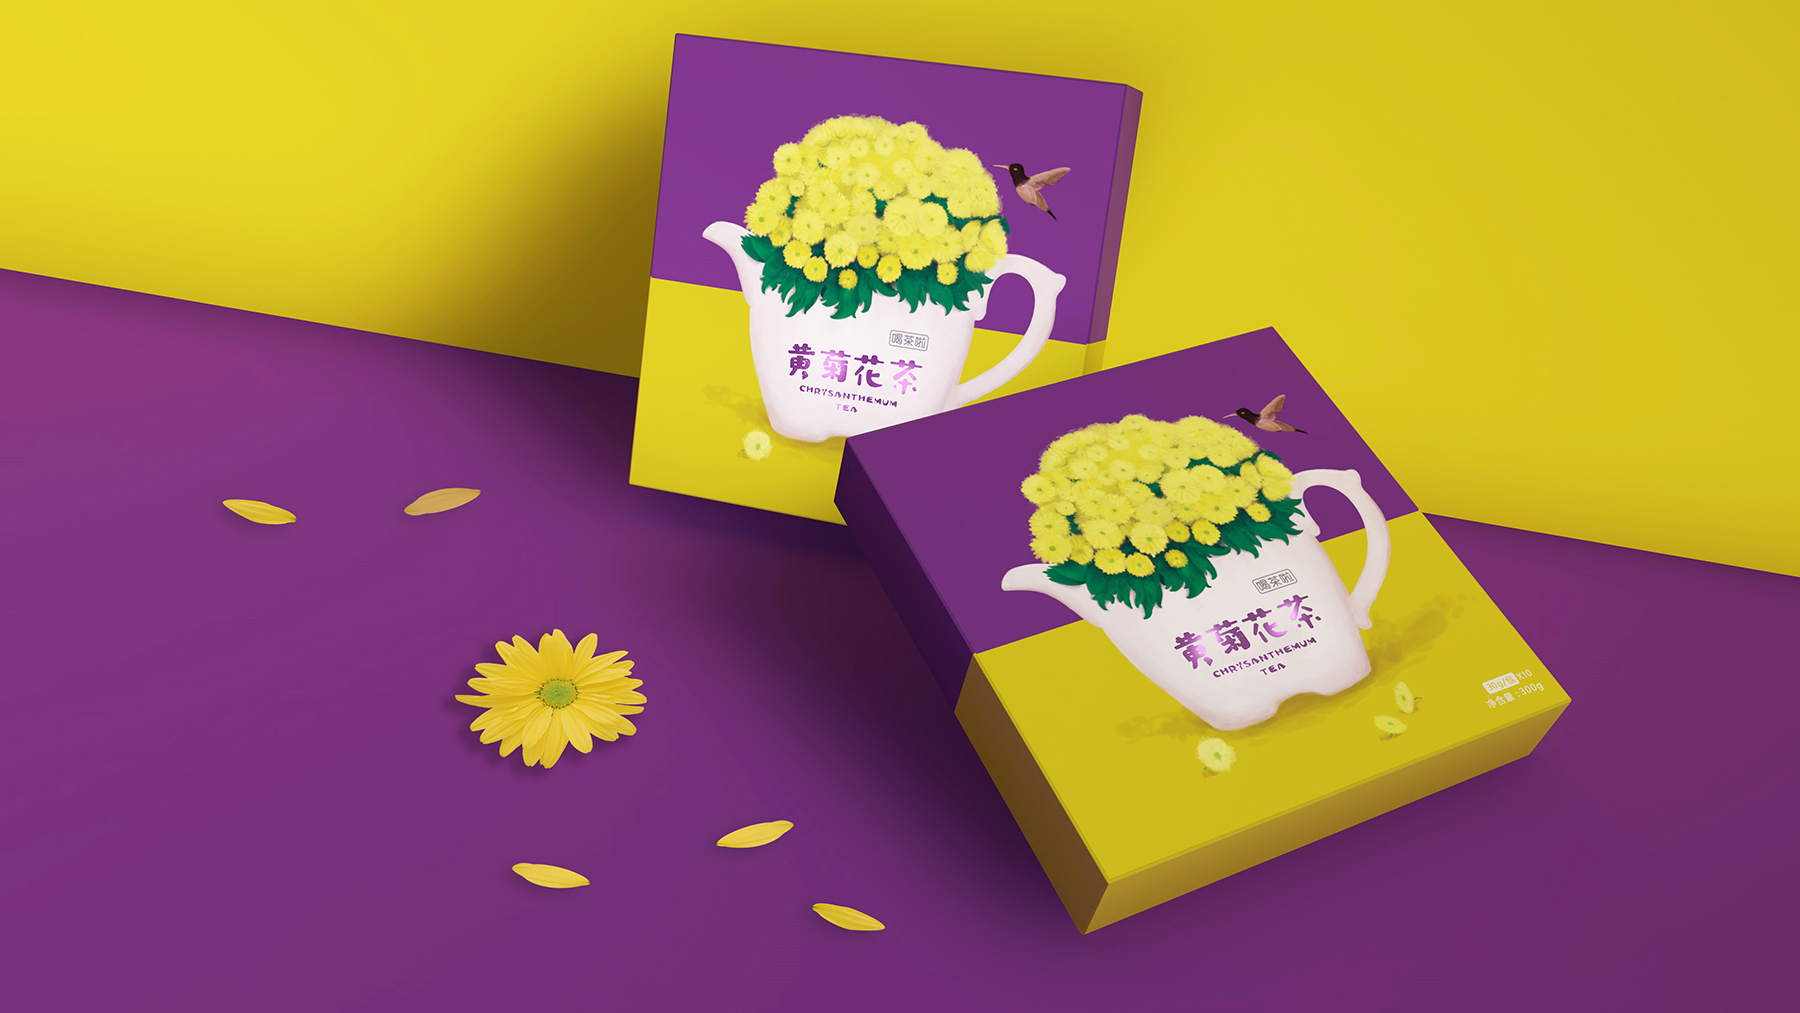 喝茶啦-系列花茶包装设计 手绘花茶包装设计 花茶包装设计哪家好 花茶包装设计公司 第8张